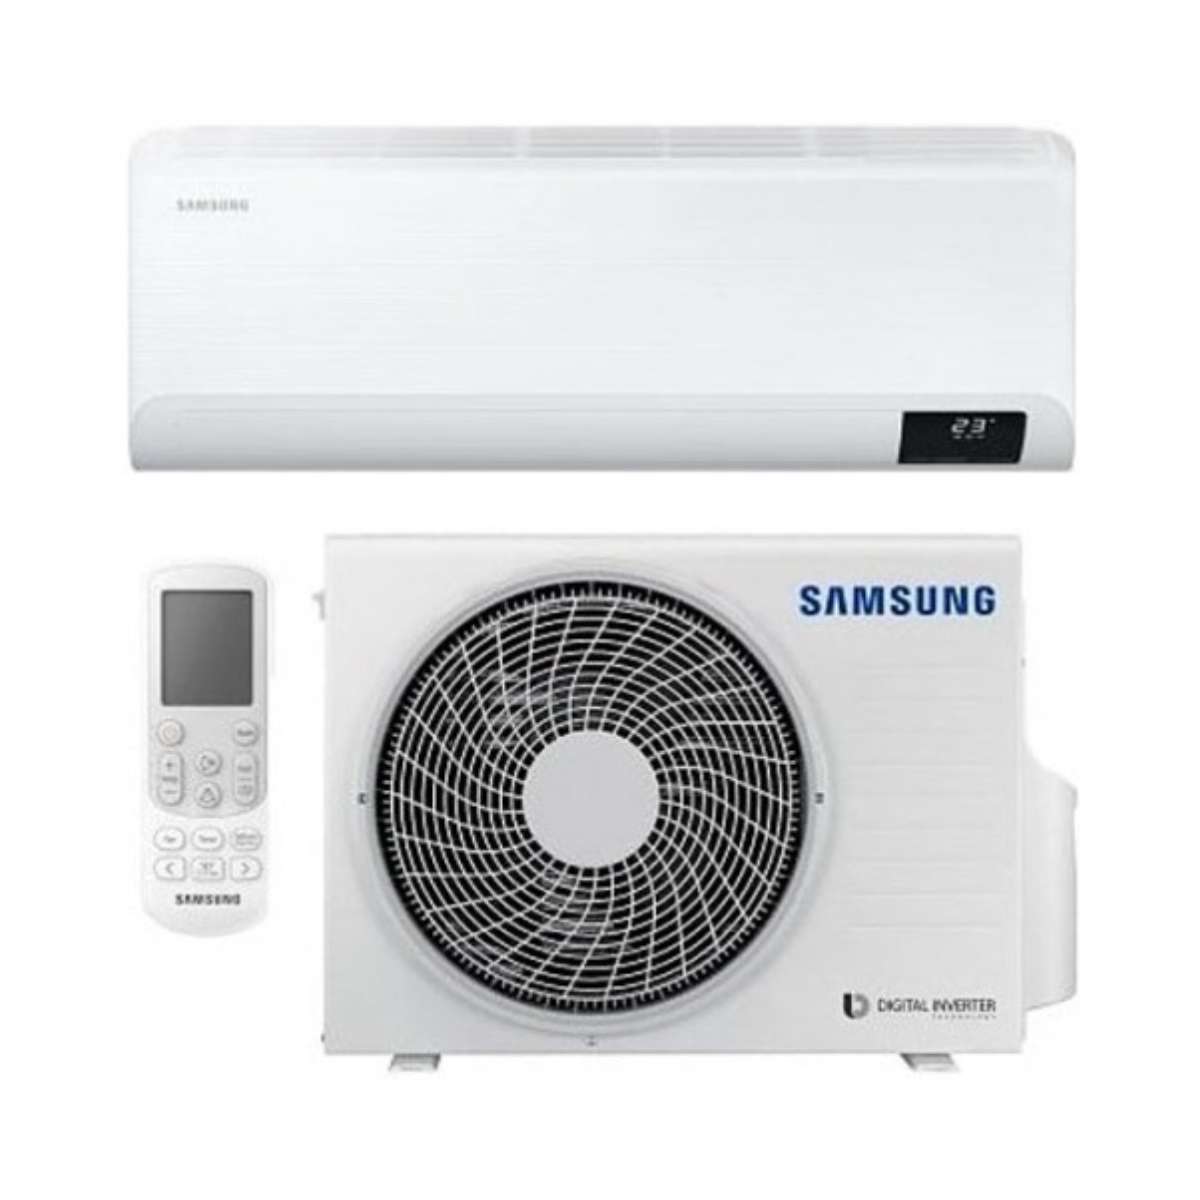 Samsung CEBU 5,0 kW 18000 BTU Split-Klimaanlage mit WLAN mit der Referenz F-AR18CBU von der Marke SAMSUNG